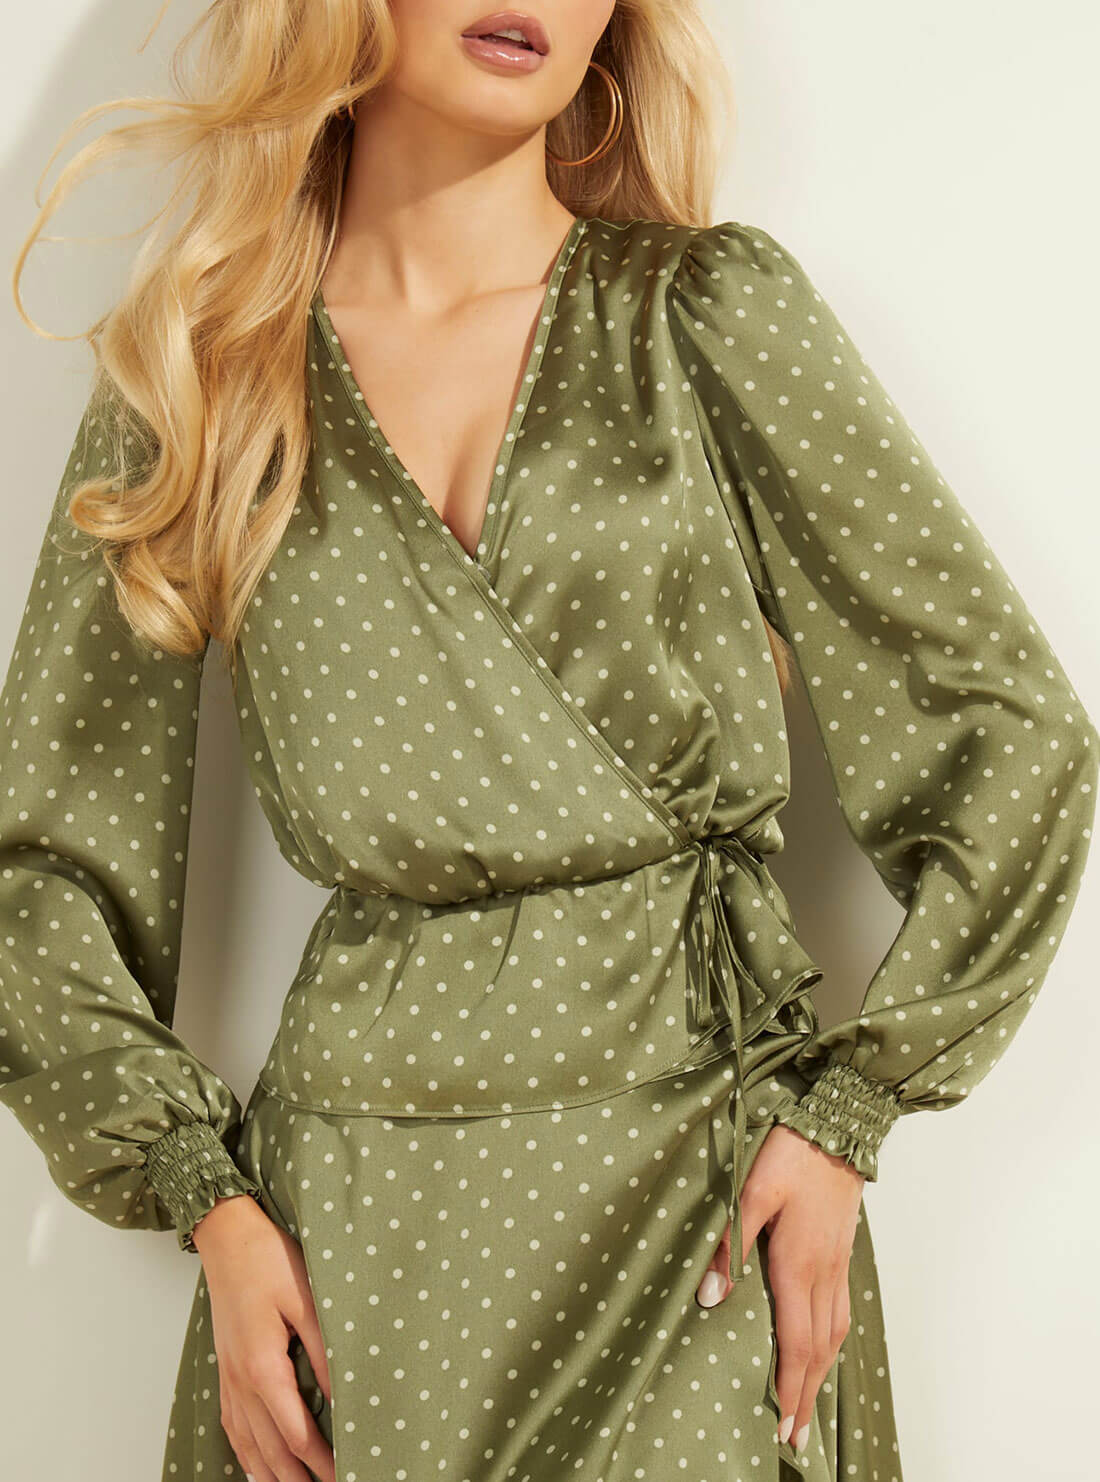 Green Polka Dot Wrap Top | GUESS Women's Apparel | detail view